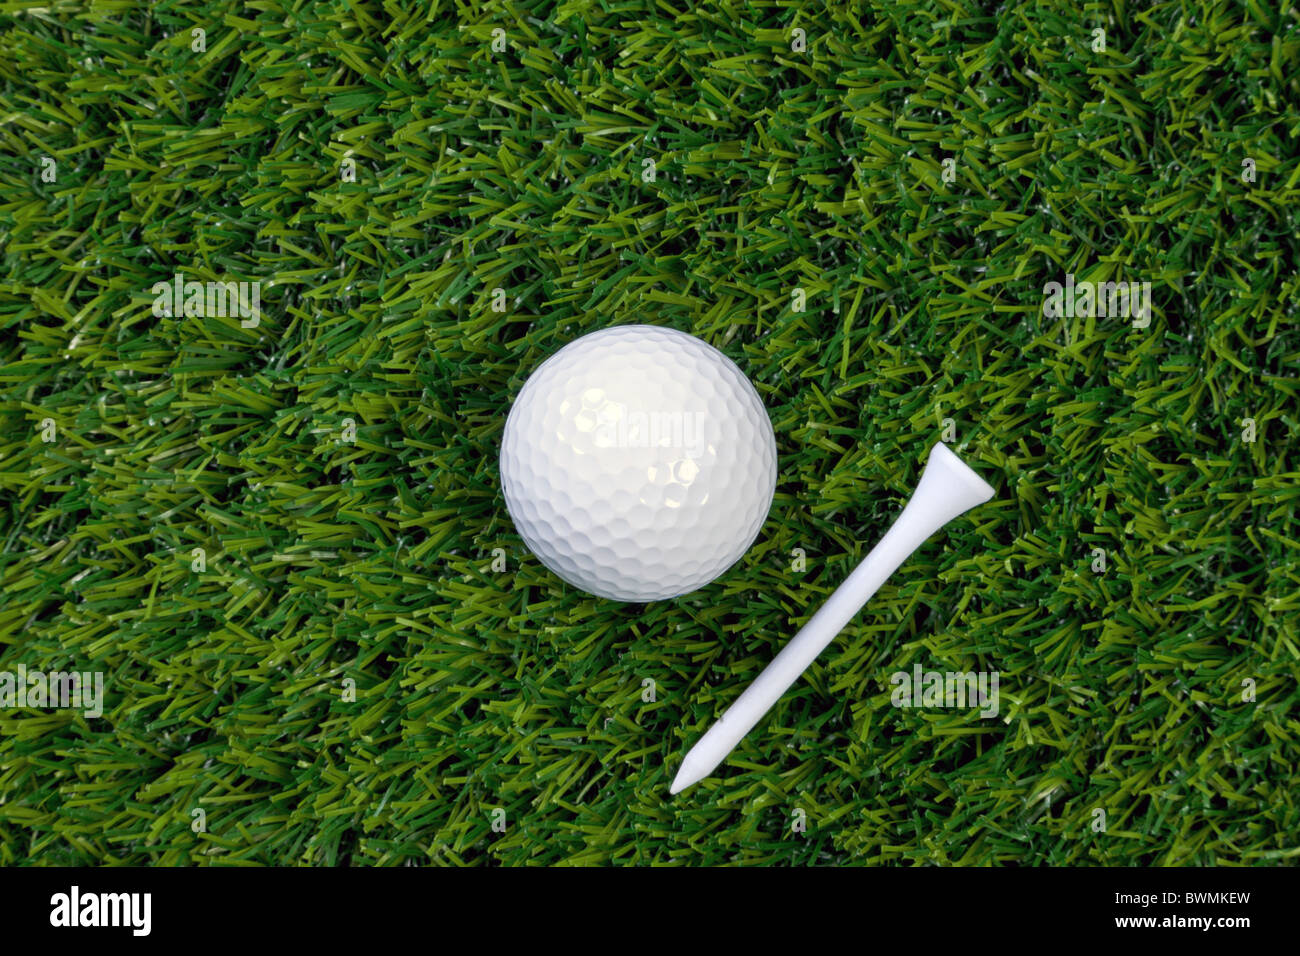 Ein Foto von einem Golfball und hölzernen Abschlag auf dem Rasen Stockfoto